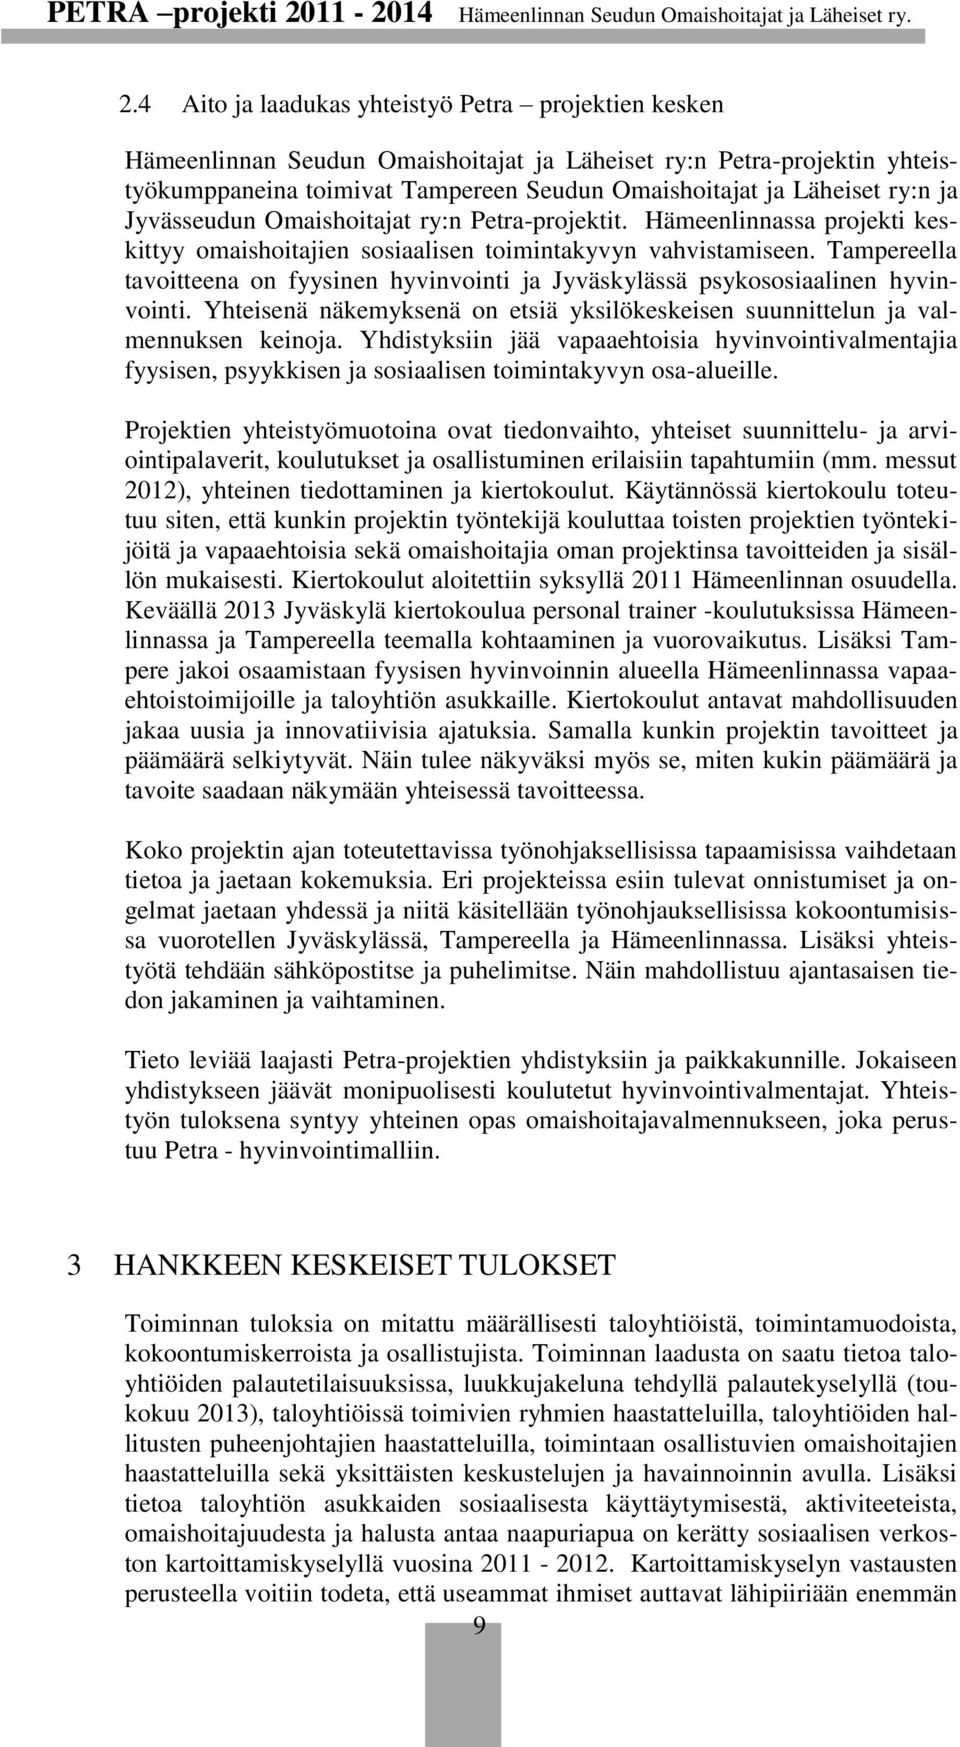 Tampereella tavoitteena on fyysinen hyvinvointi ja Jyväskylässä psykososiaalinen hyvinvointi. Yhteisenä näkemyksenä on etsiä yksilökeskeisen suunnittelun ja valmennuksen keinoja.